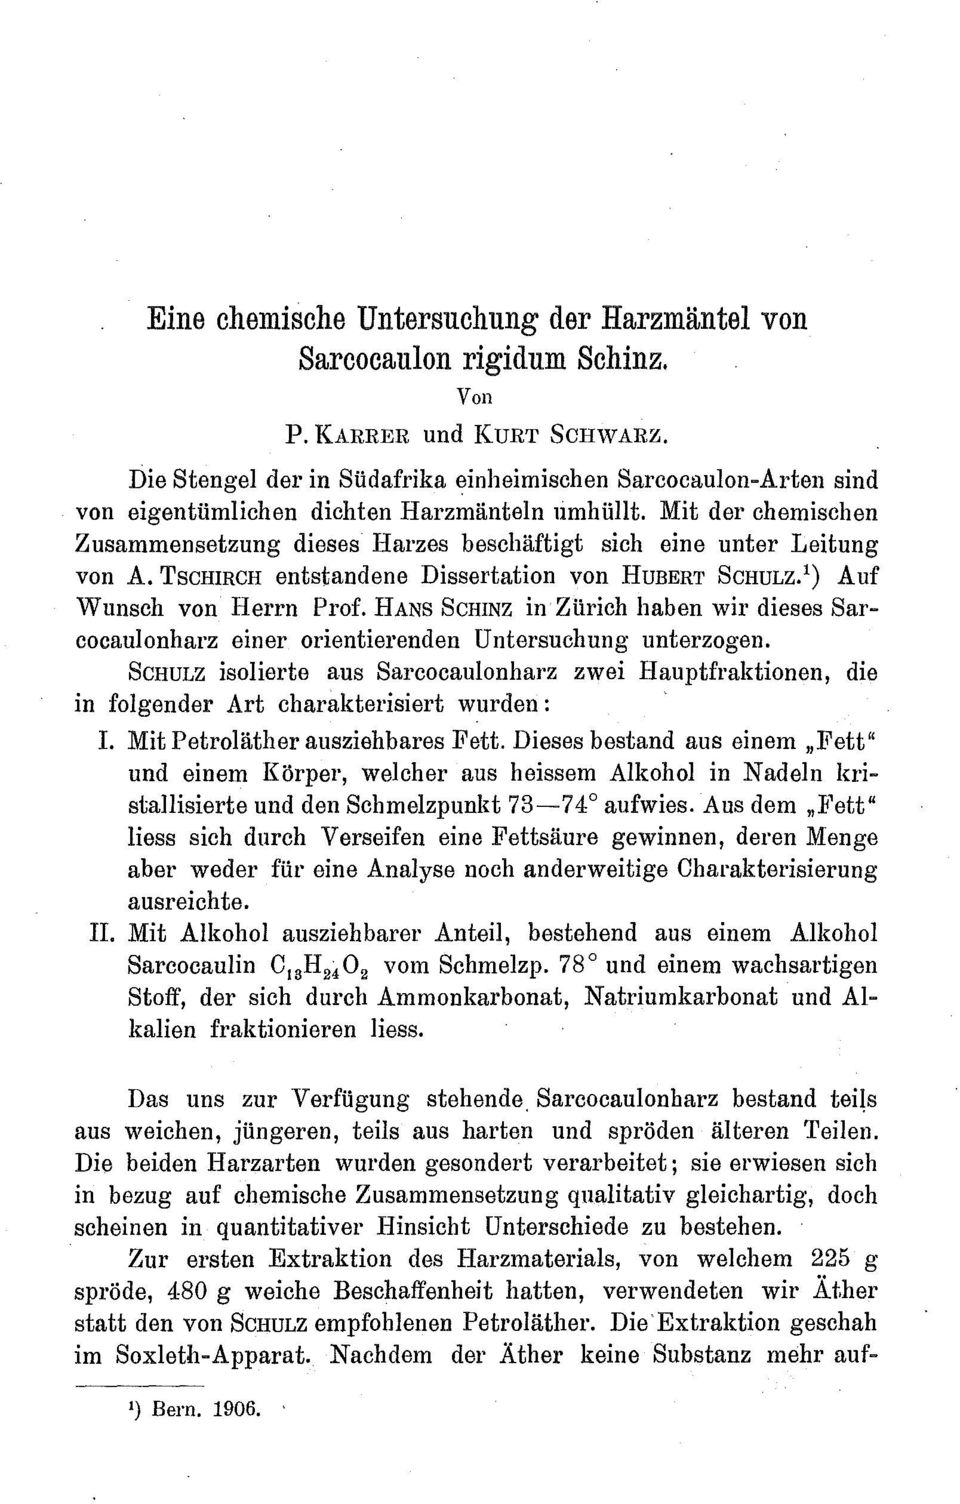 Mit der chemischen Zusammensetzung dieses Harzes beschäftigt sich eine unter Leitung von A. TSCHIRCH entstandene Dissertation von HUBERT SCHULZ. 1) Auf Wunsch von Herrn Prof.